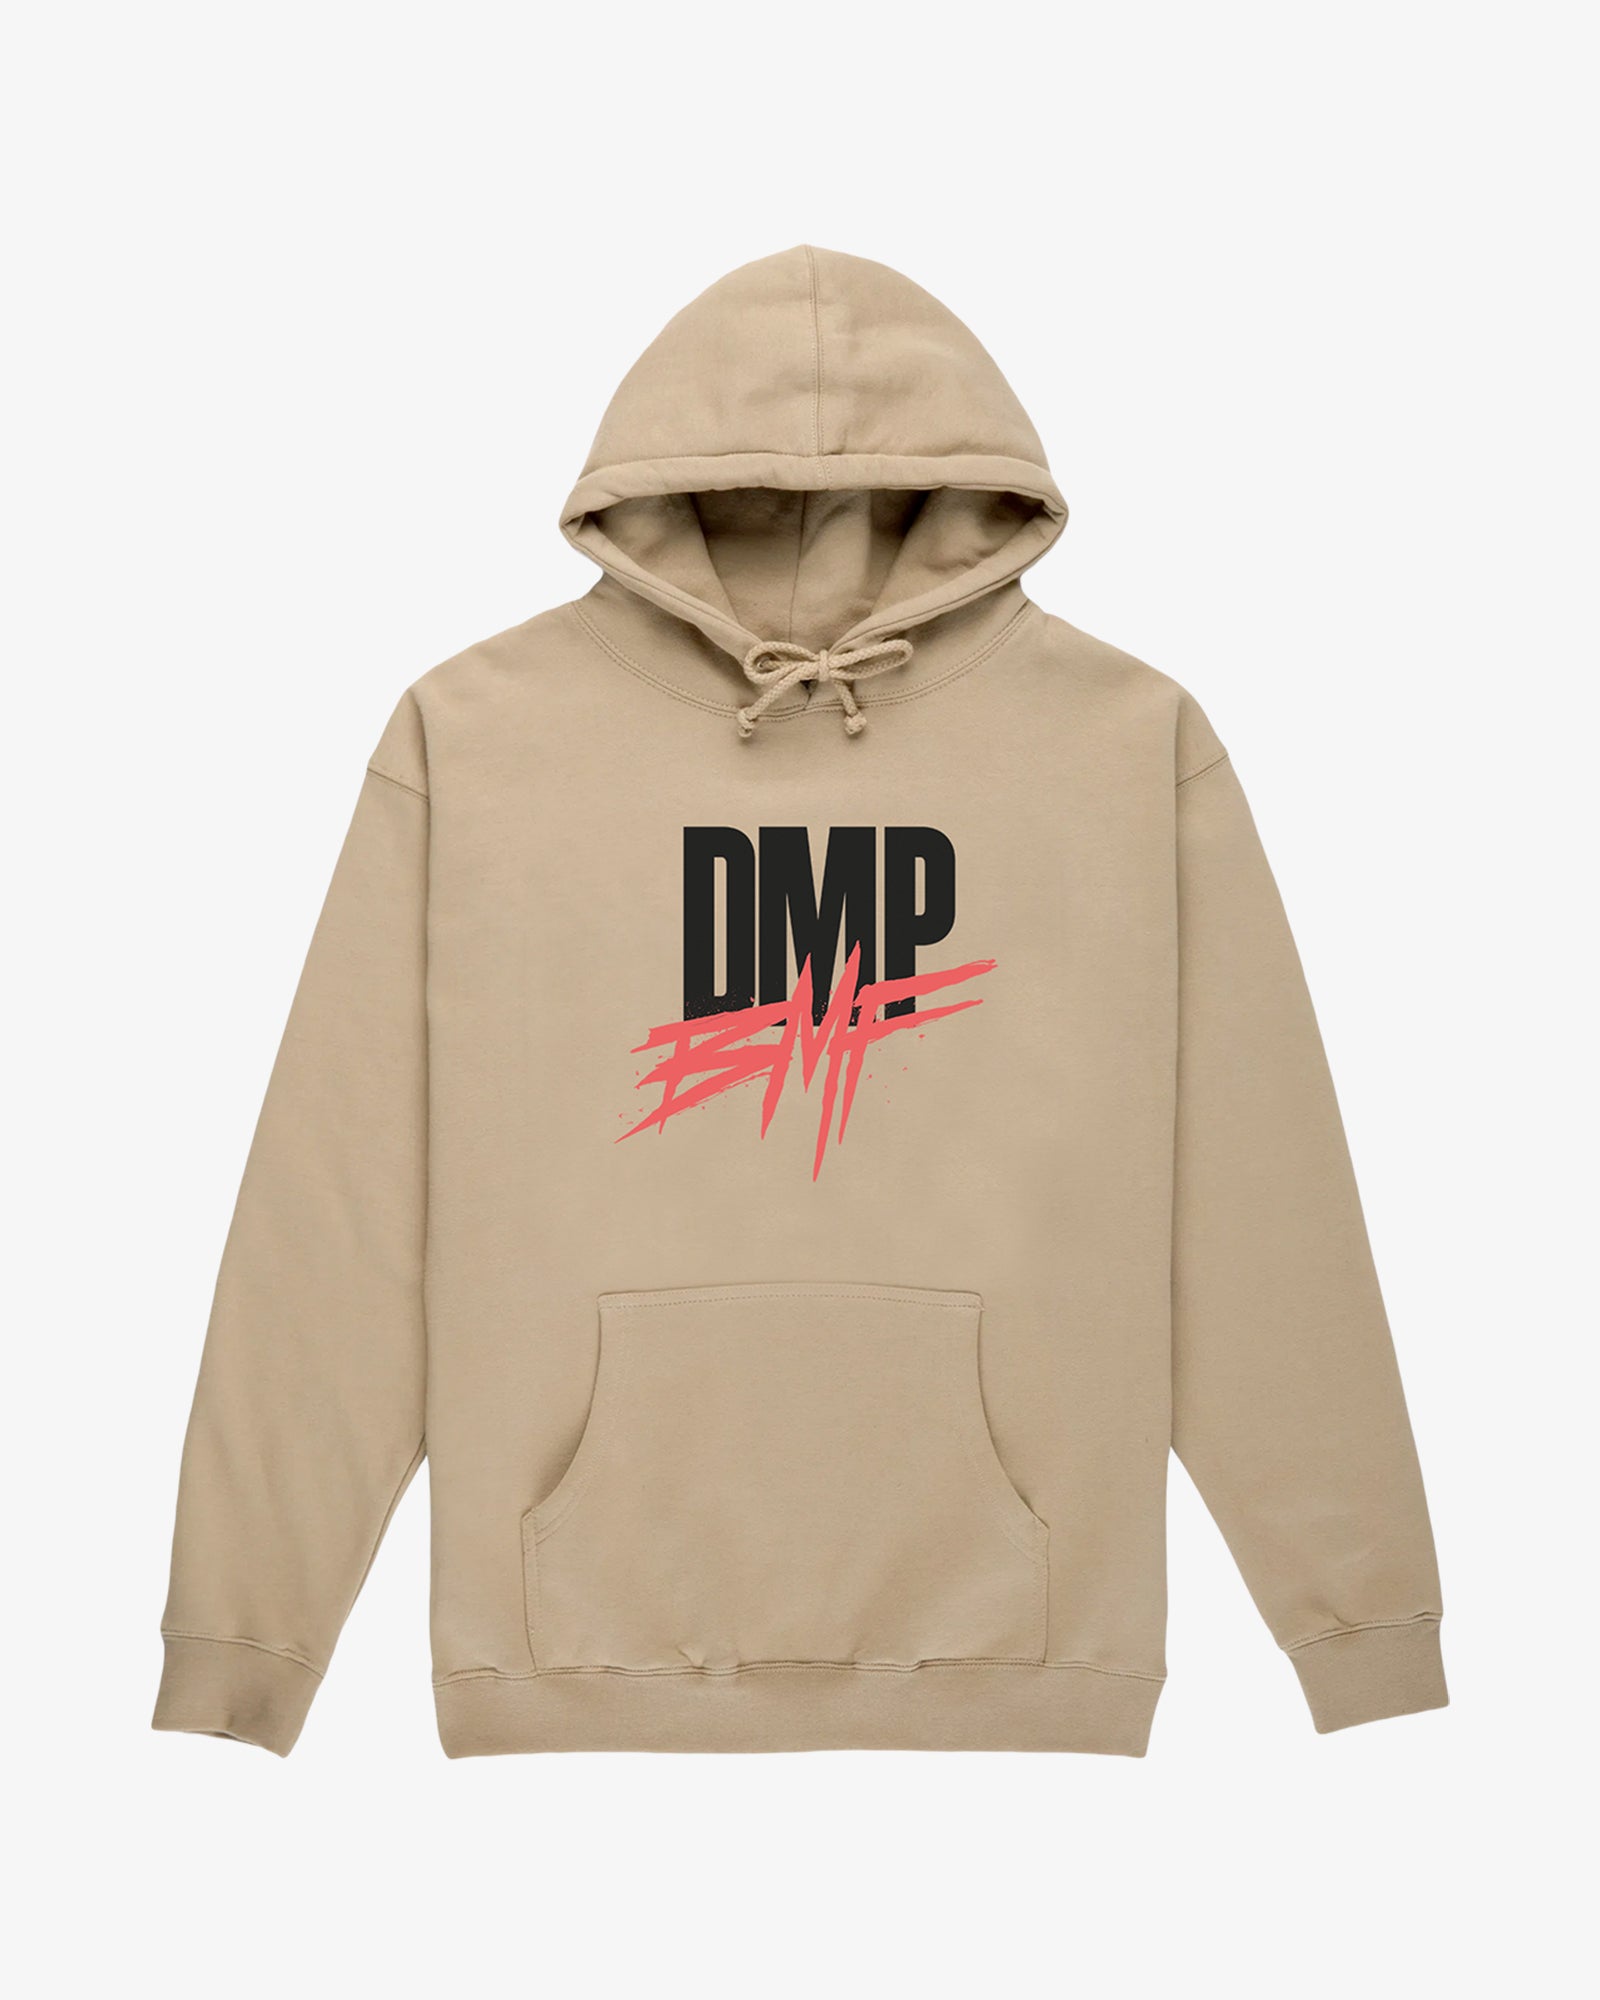 DMP/BMF Sandstone Hoodie